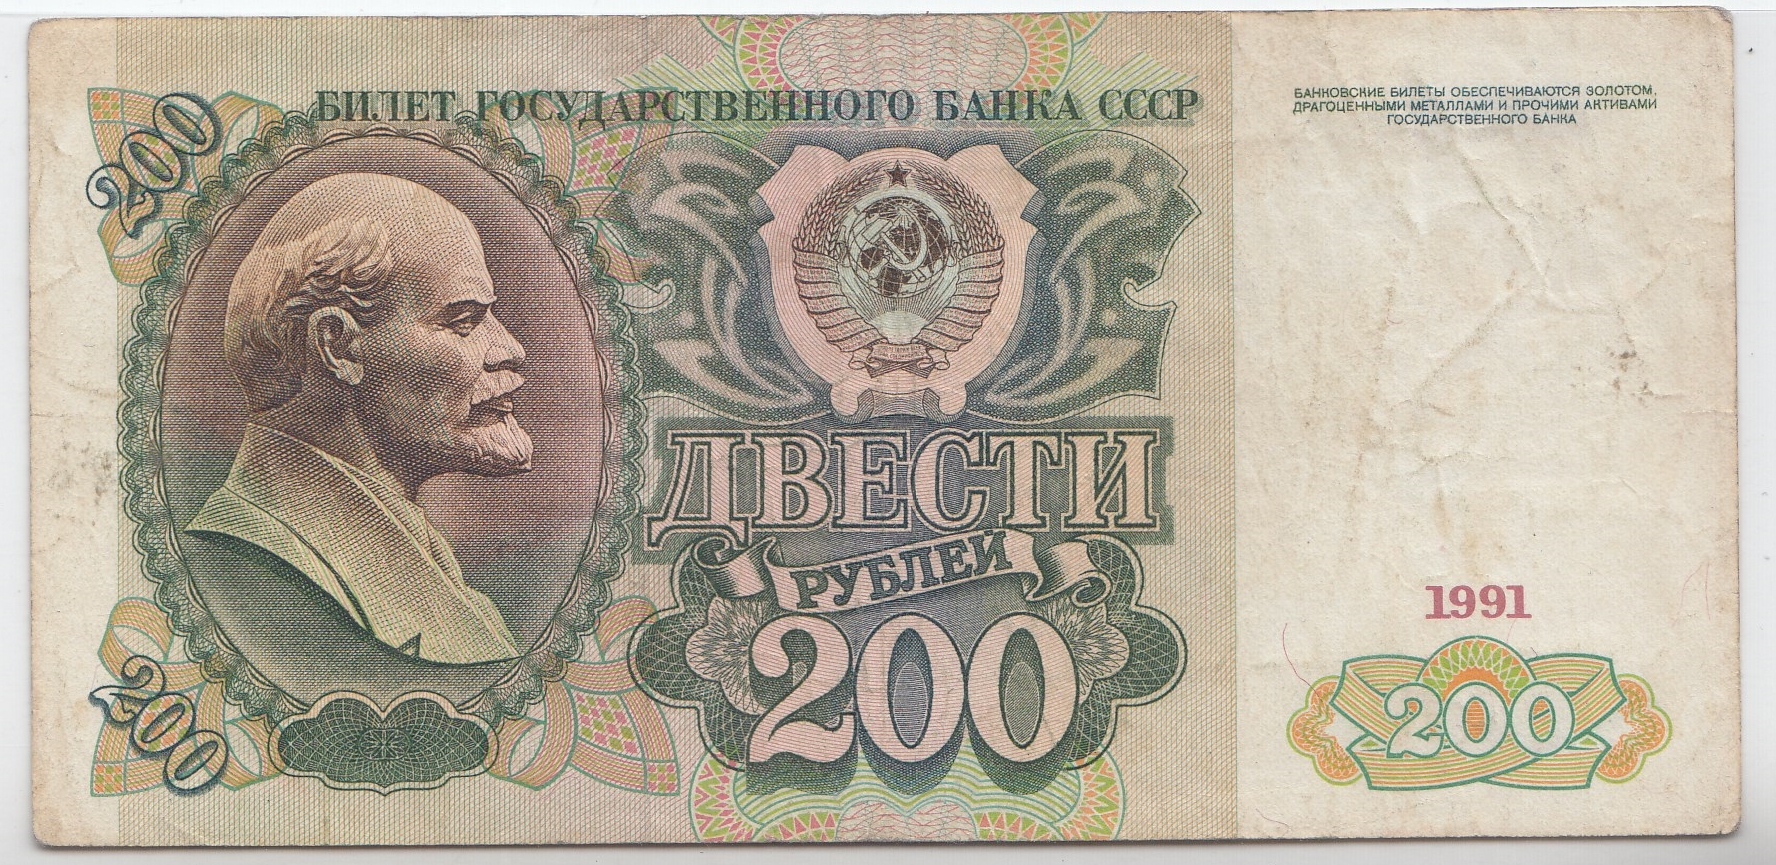 200 рублей 1991 год. Билет государственного банка СССР. В.З. Ленин В.И. 